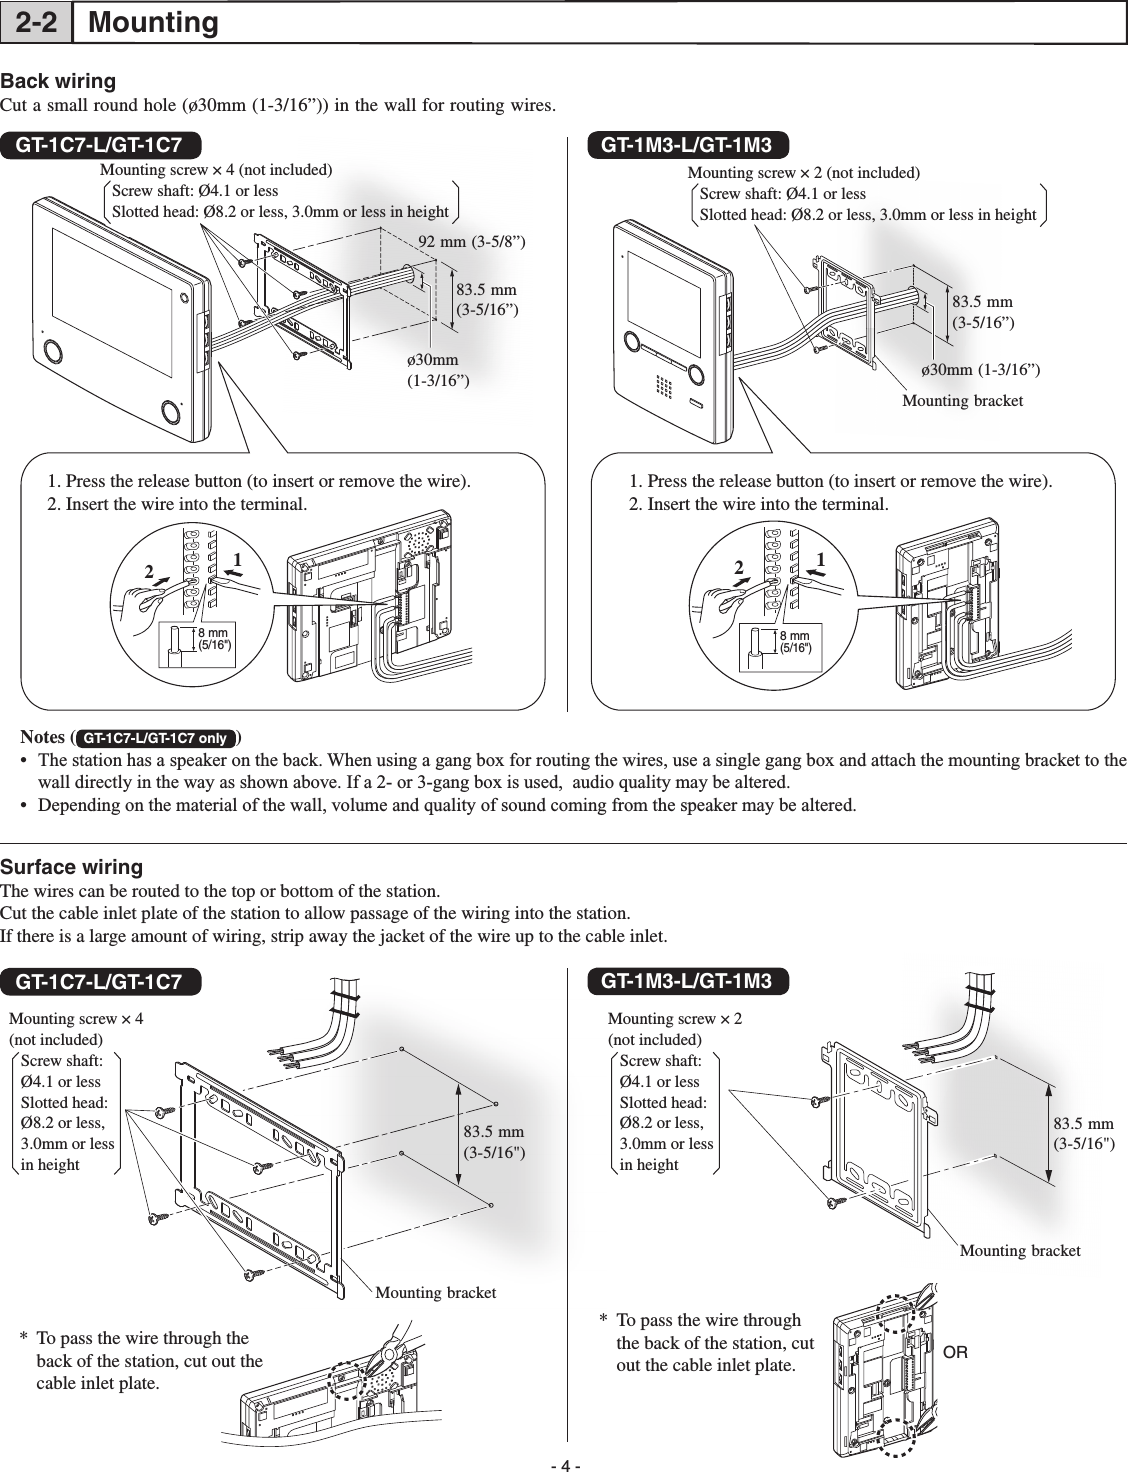 Page 4 of 8 - Aiphone GT-1C7_1M3_IM_E_16.06.23 GT-1C7-L/GT-1C7, GT-1M3-L/GT-1M3 Installation Manual GT-1C7-GT-1M3-Installation-Manual